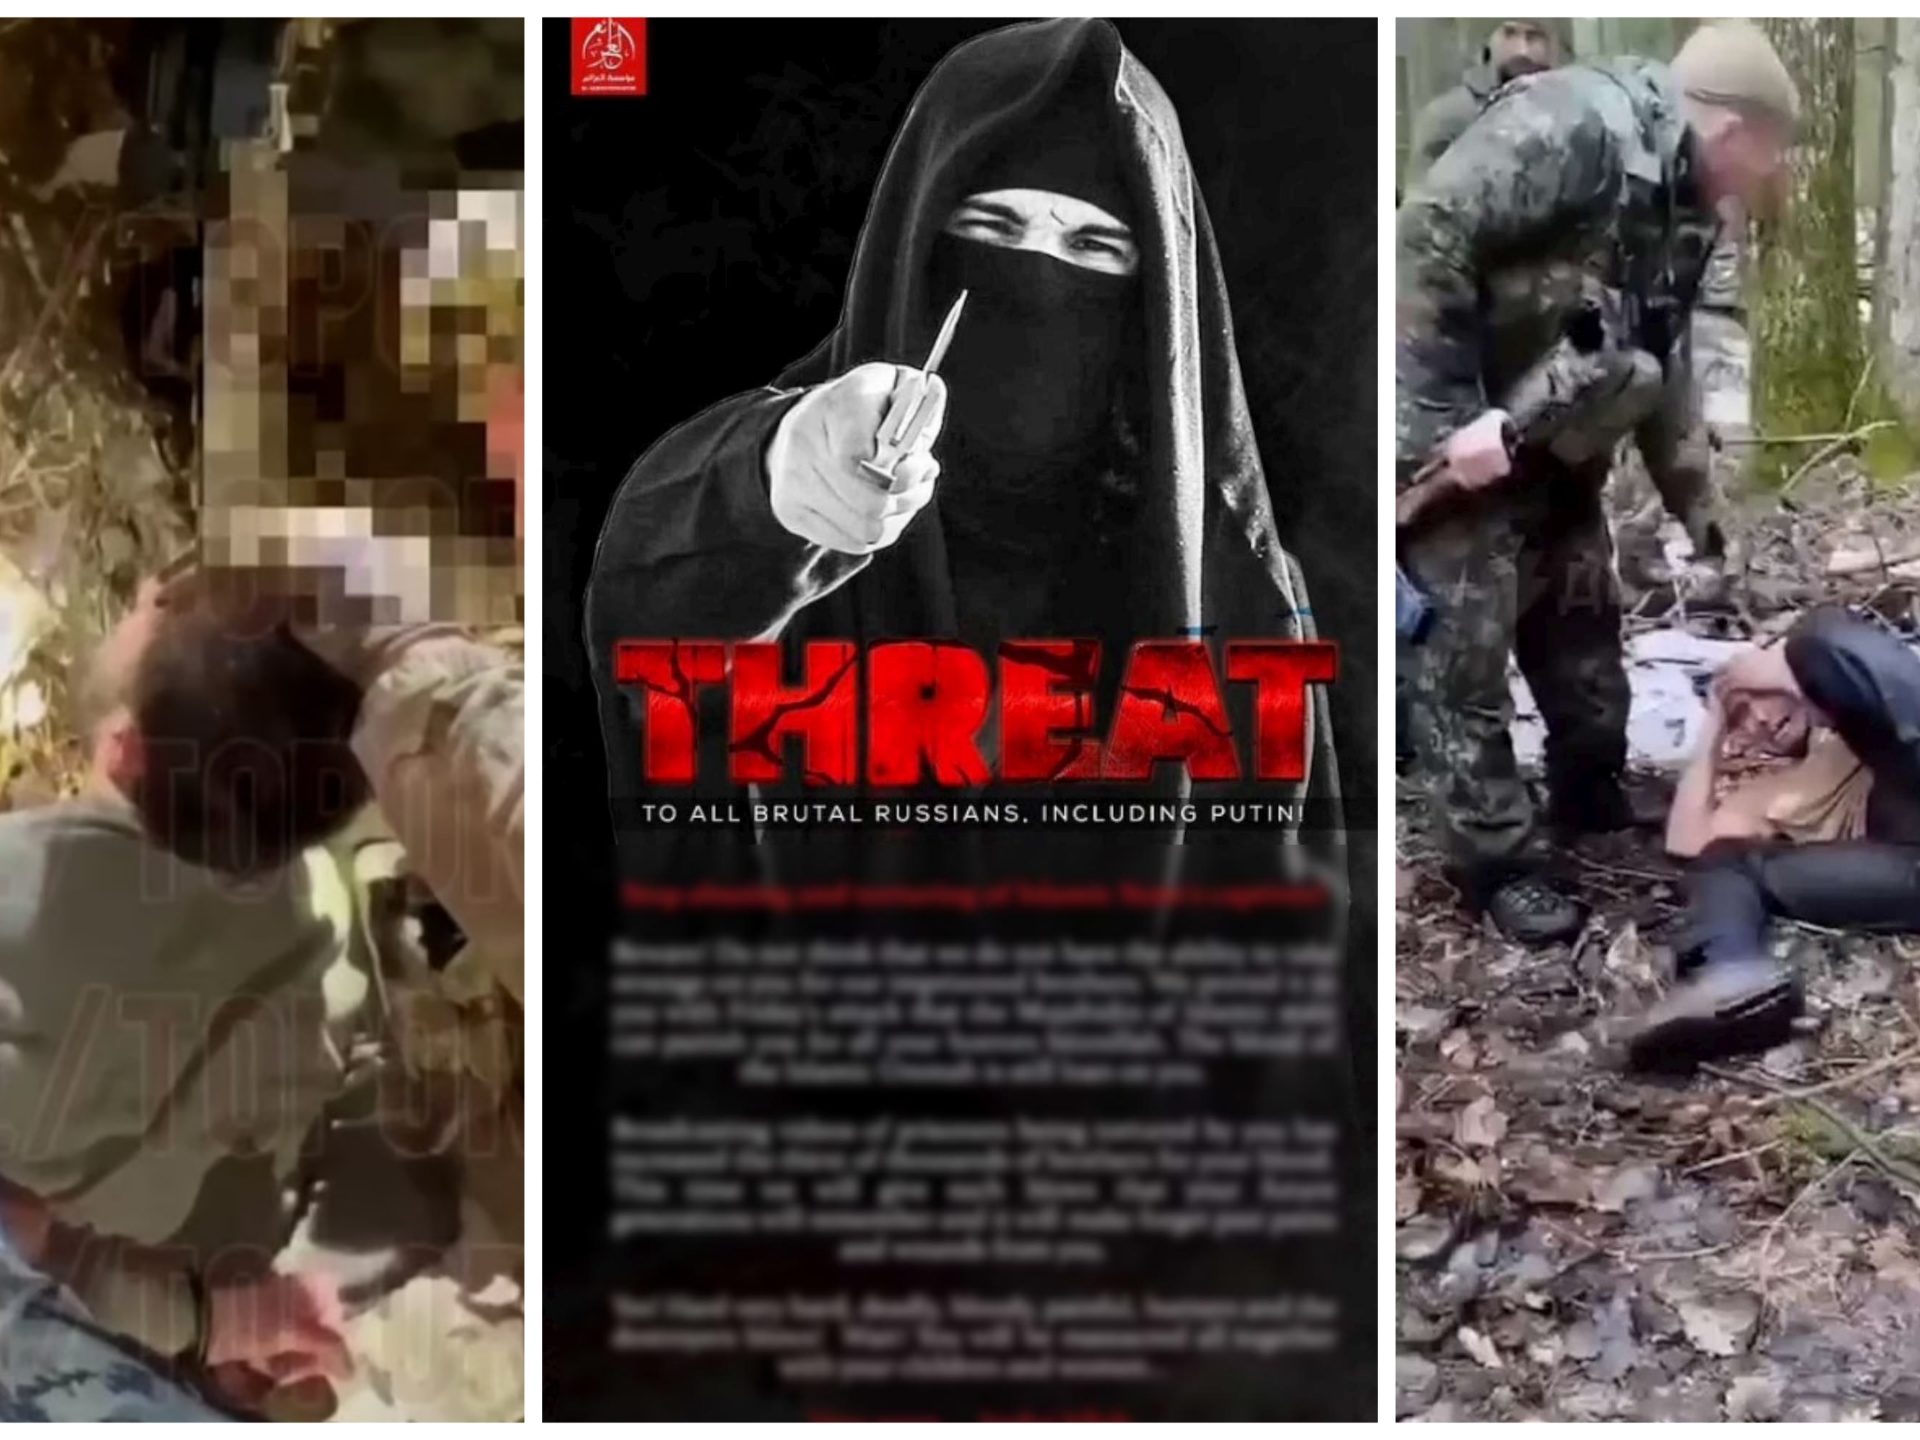 Isis amenaza con masacrar a Putin: "Dejen de torturar a nuestro pueblo"